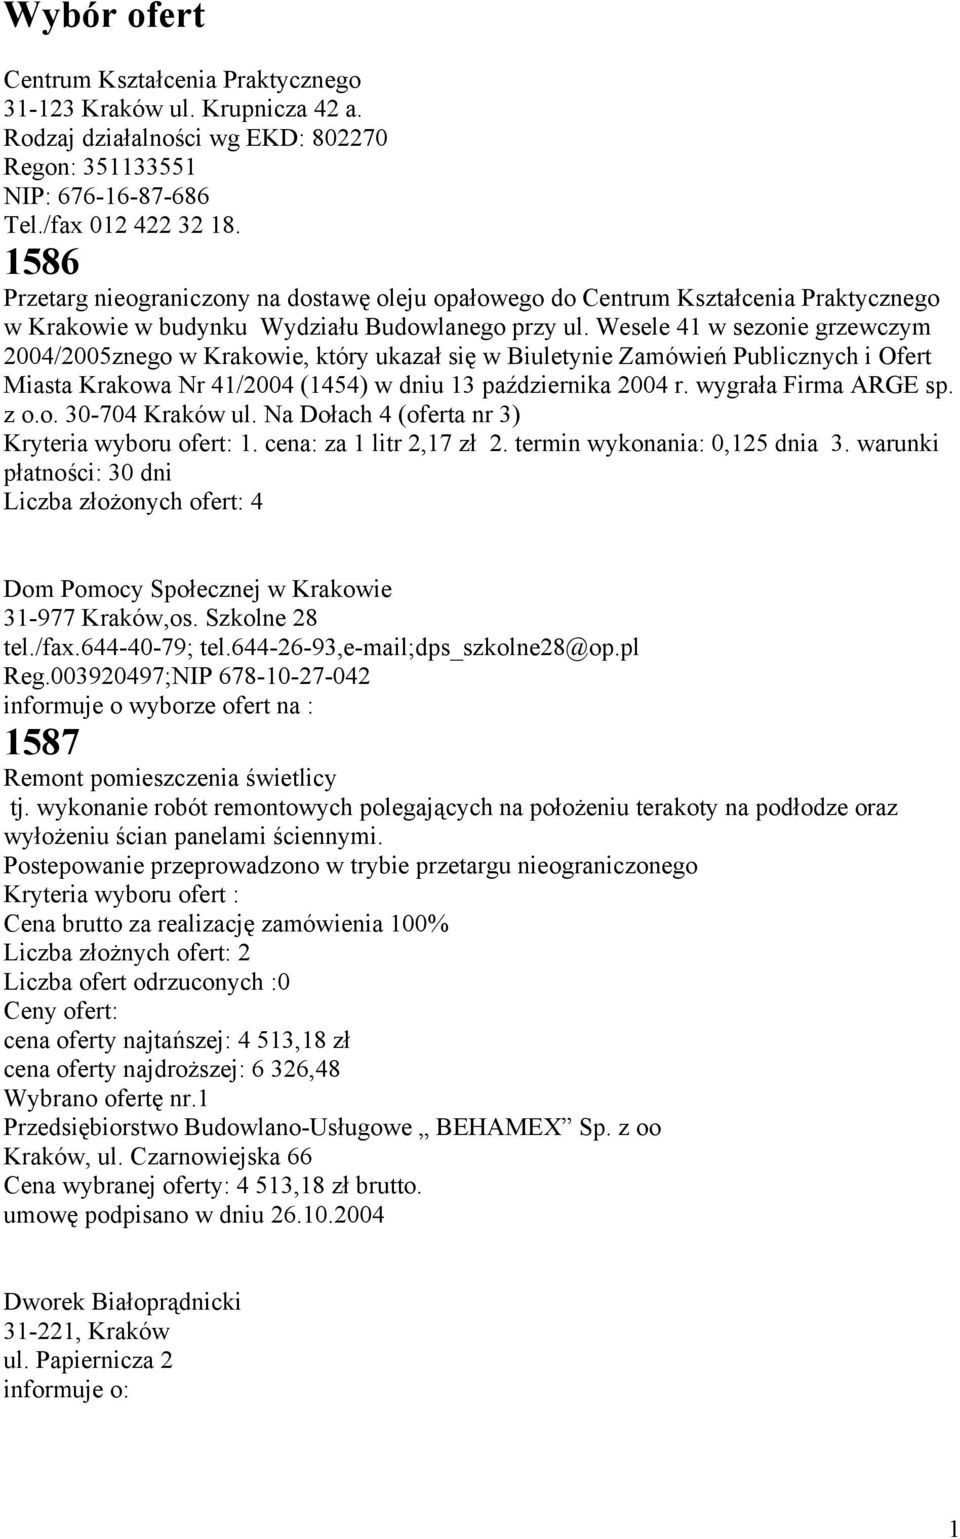 Wesele 41 w sezonie grzewczym 2004/2005znego w Krakowie, który ukazał się w Biuletynie Zamówień Publicznych i Ofert Miasta Krakowa Nr 41/2004 (1454) w dniu 13 października 2004 r.